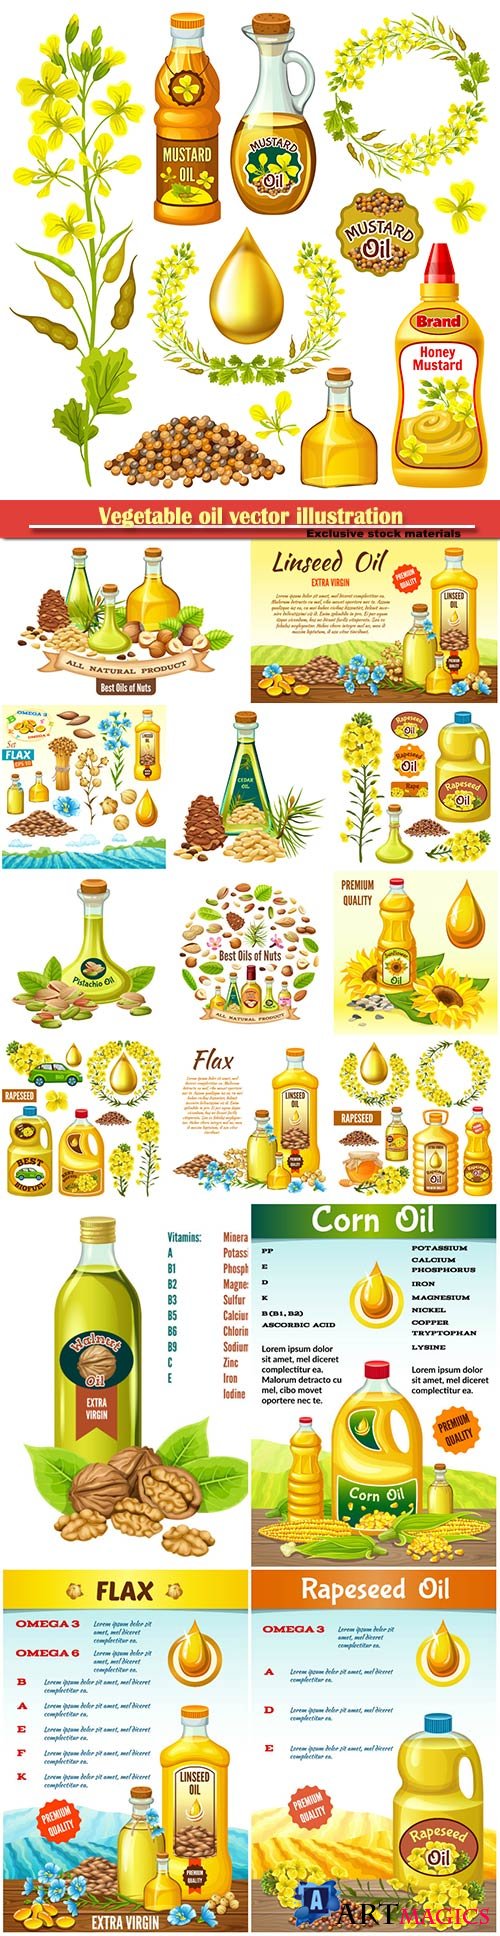 Vegetable oil vector illustration